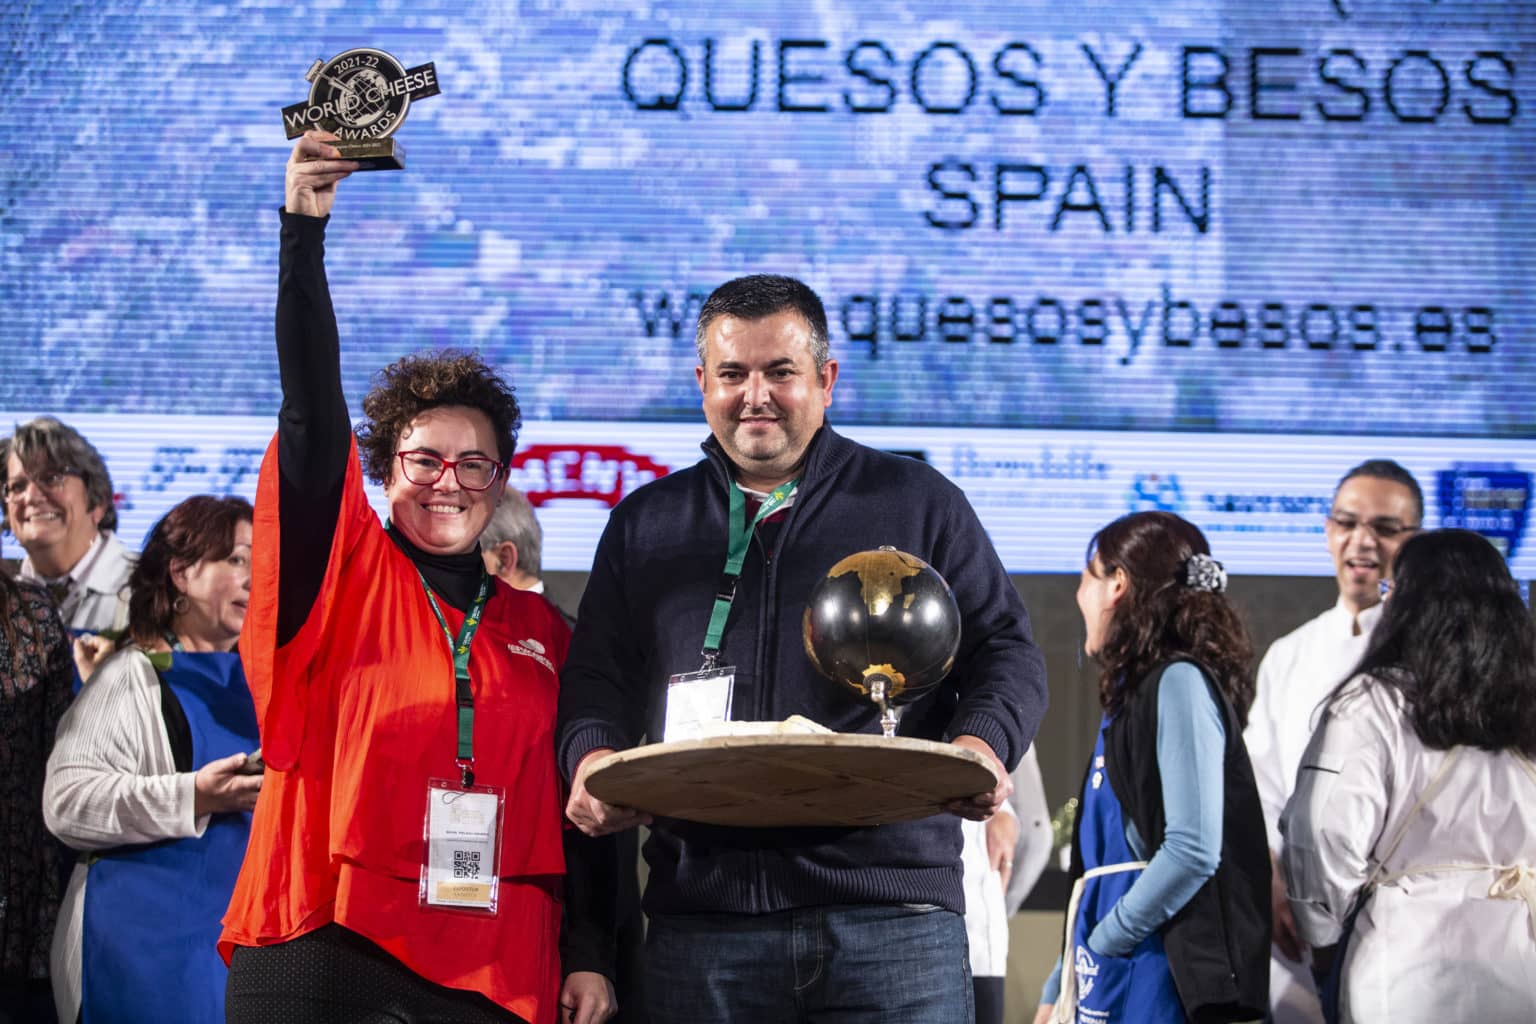 Olavidia del caseificio Quesos y Besos eletto miglior formaggio del mondo